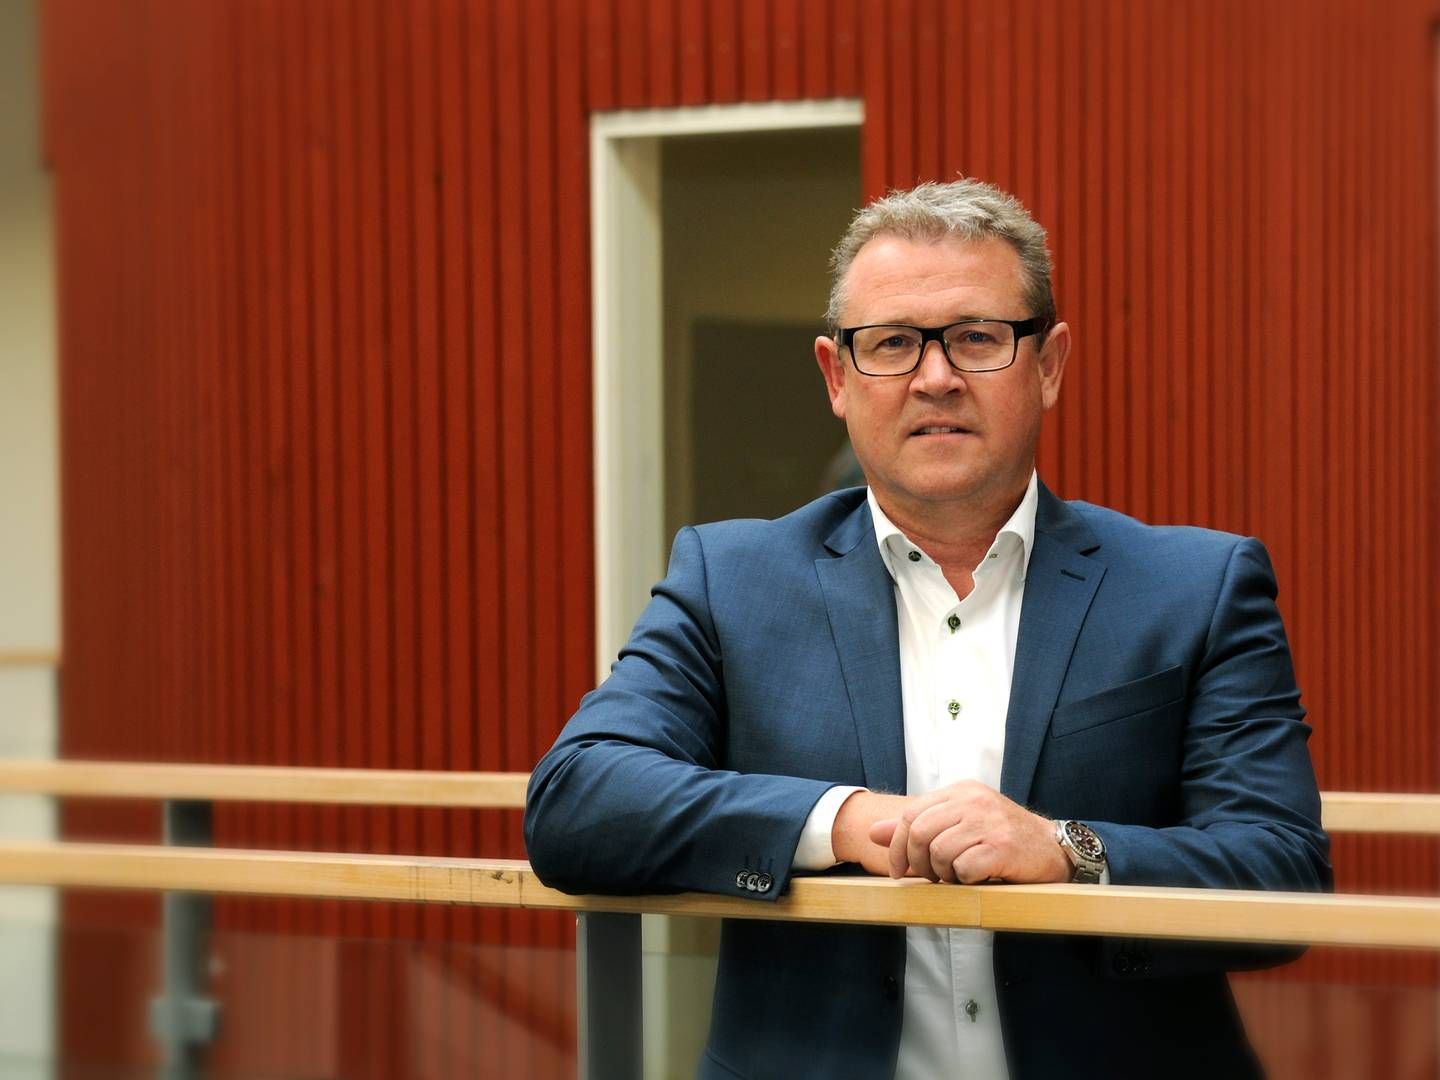 Adm. direktør Frank Abel understreger, at Sønderjysk Forsikring har samme identitet som altid, selv om forretningen nu er landsdækkende. | Foto: Pr